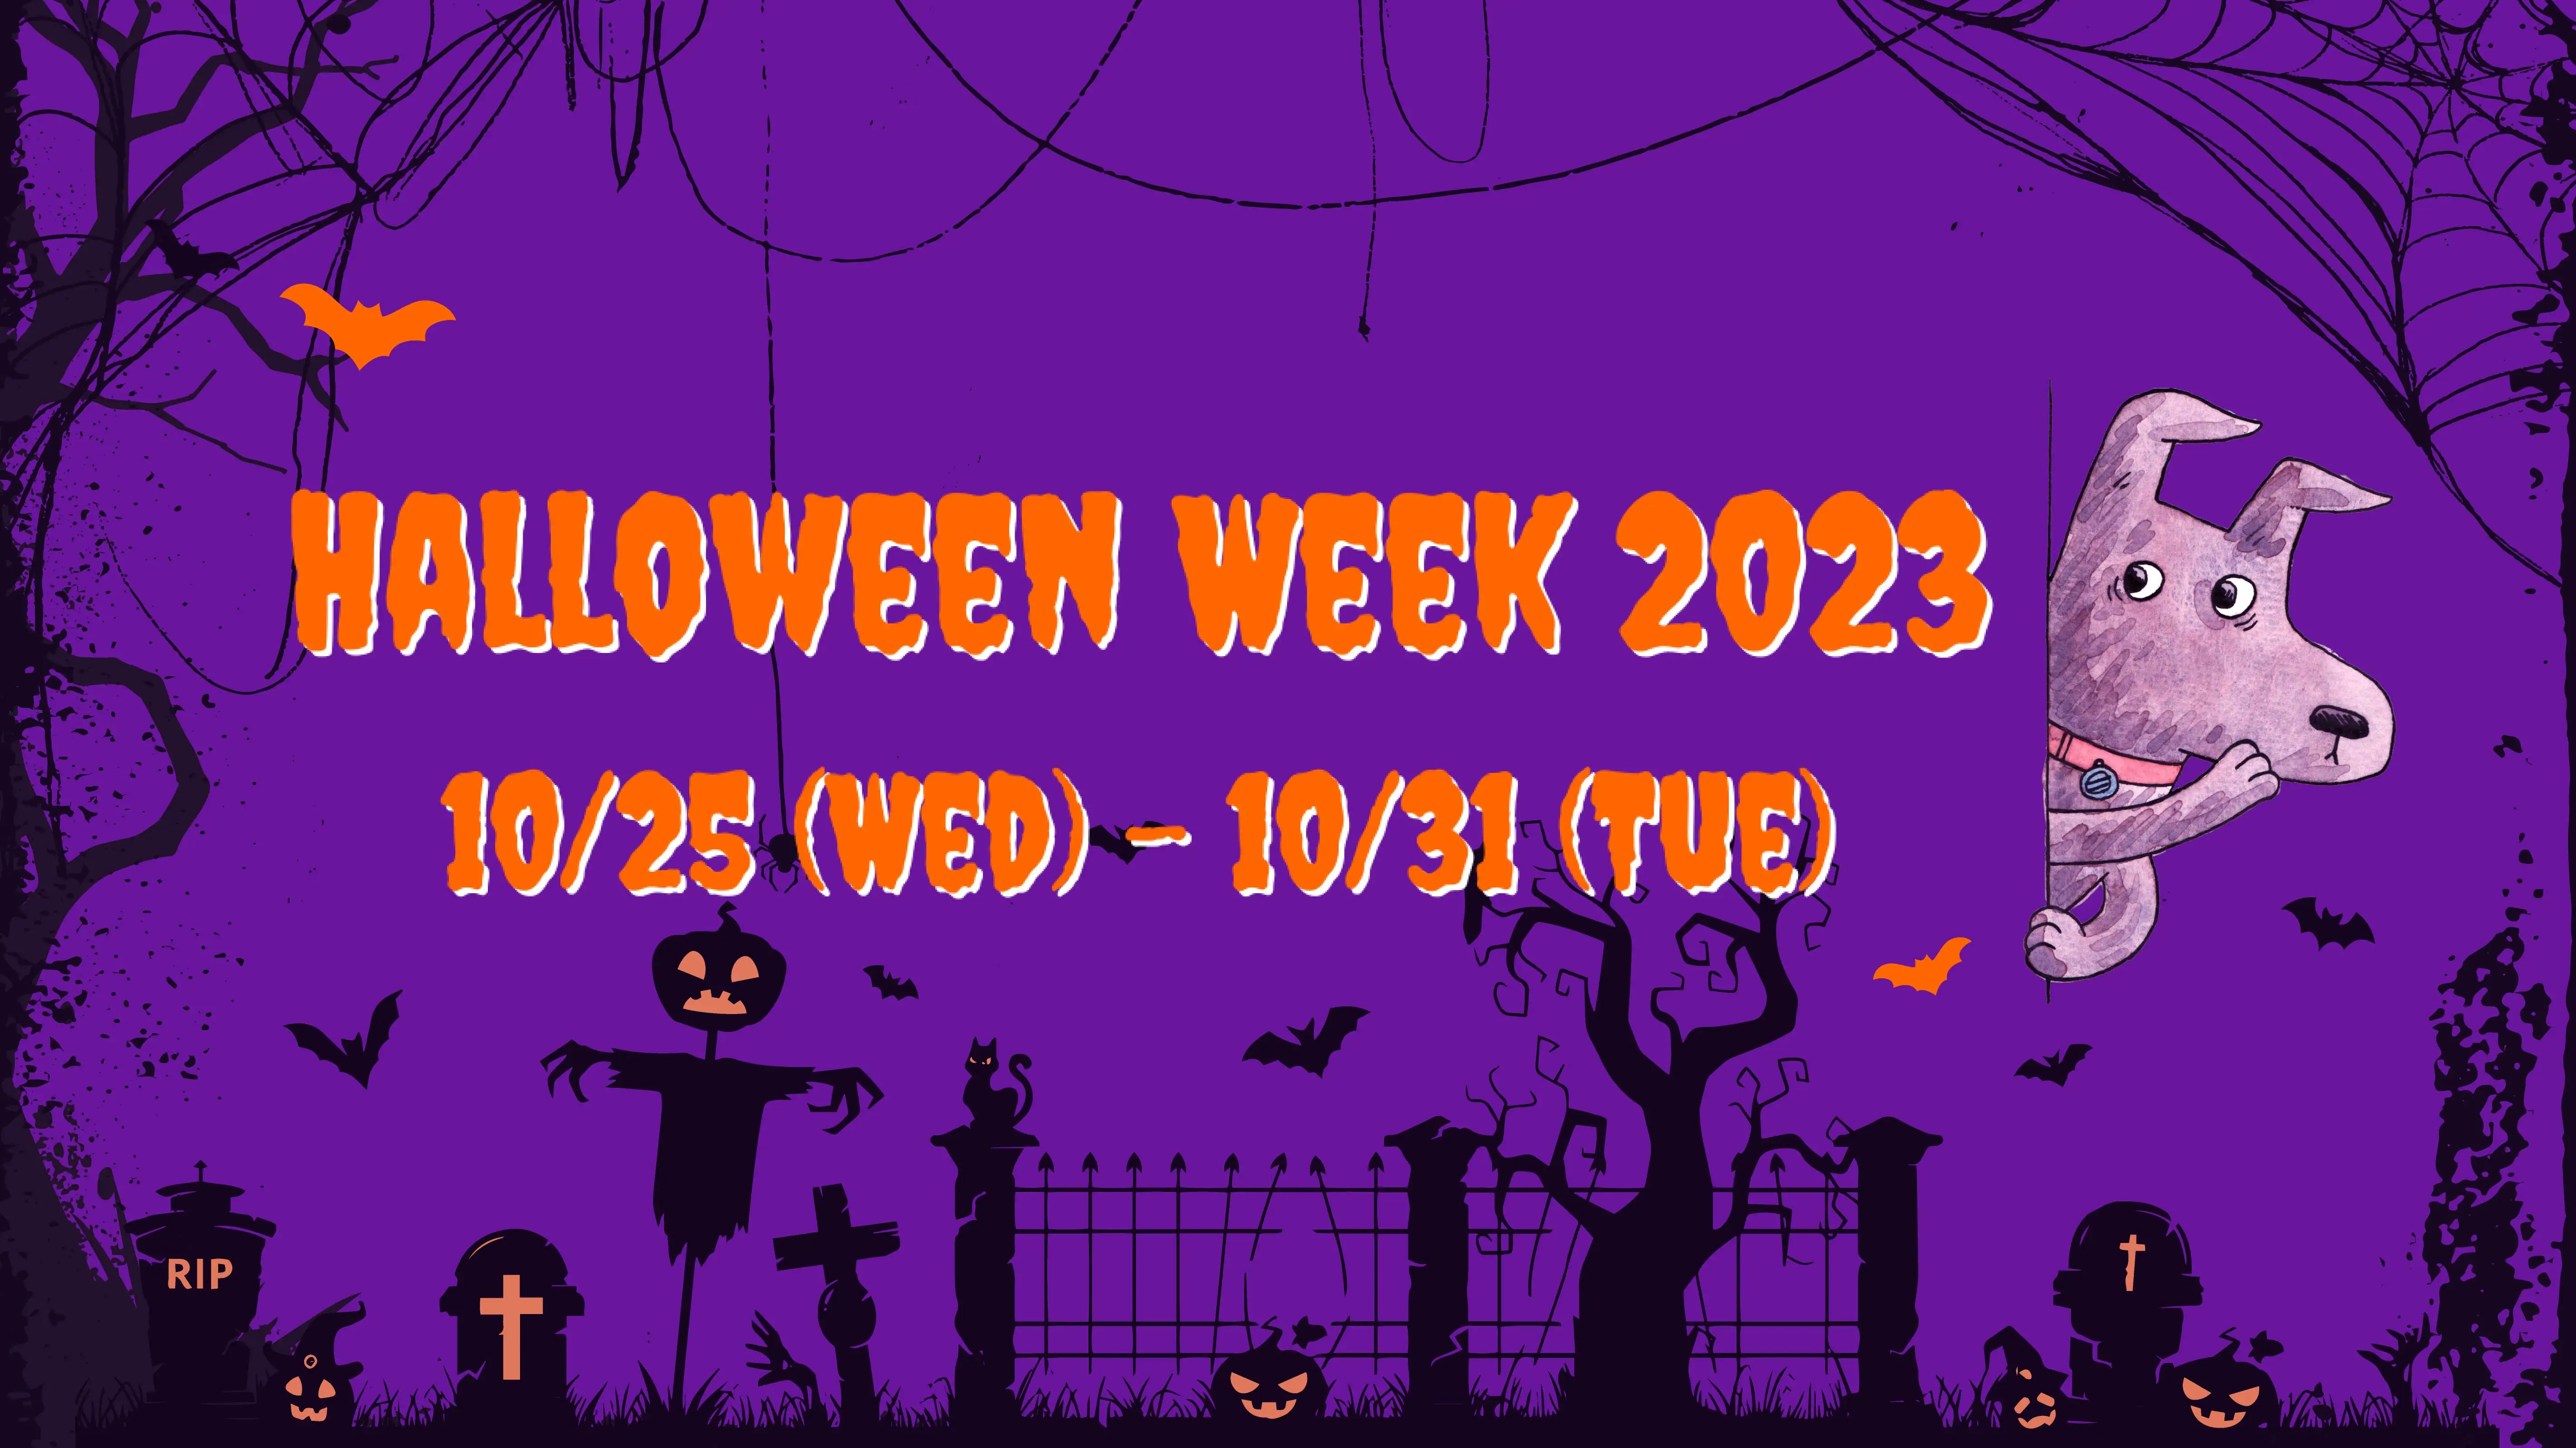 KA Halloween Week 2023: 10/25 (Wed) - 31 (Tue)